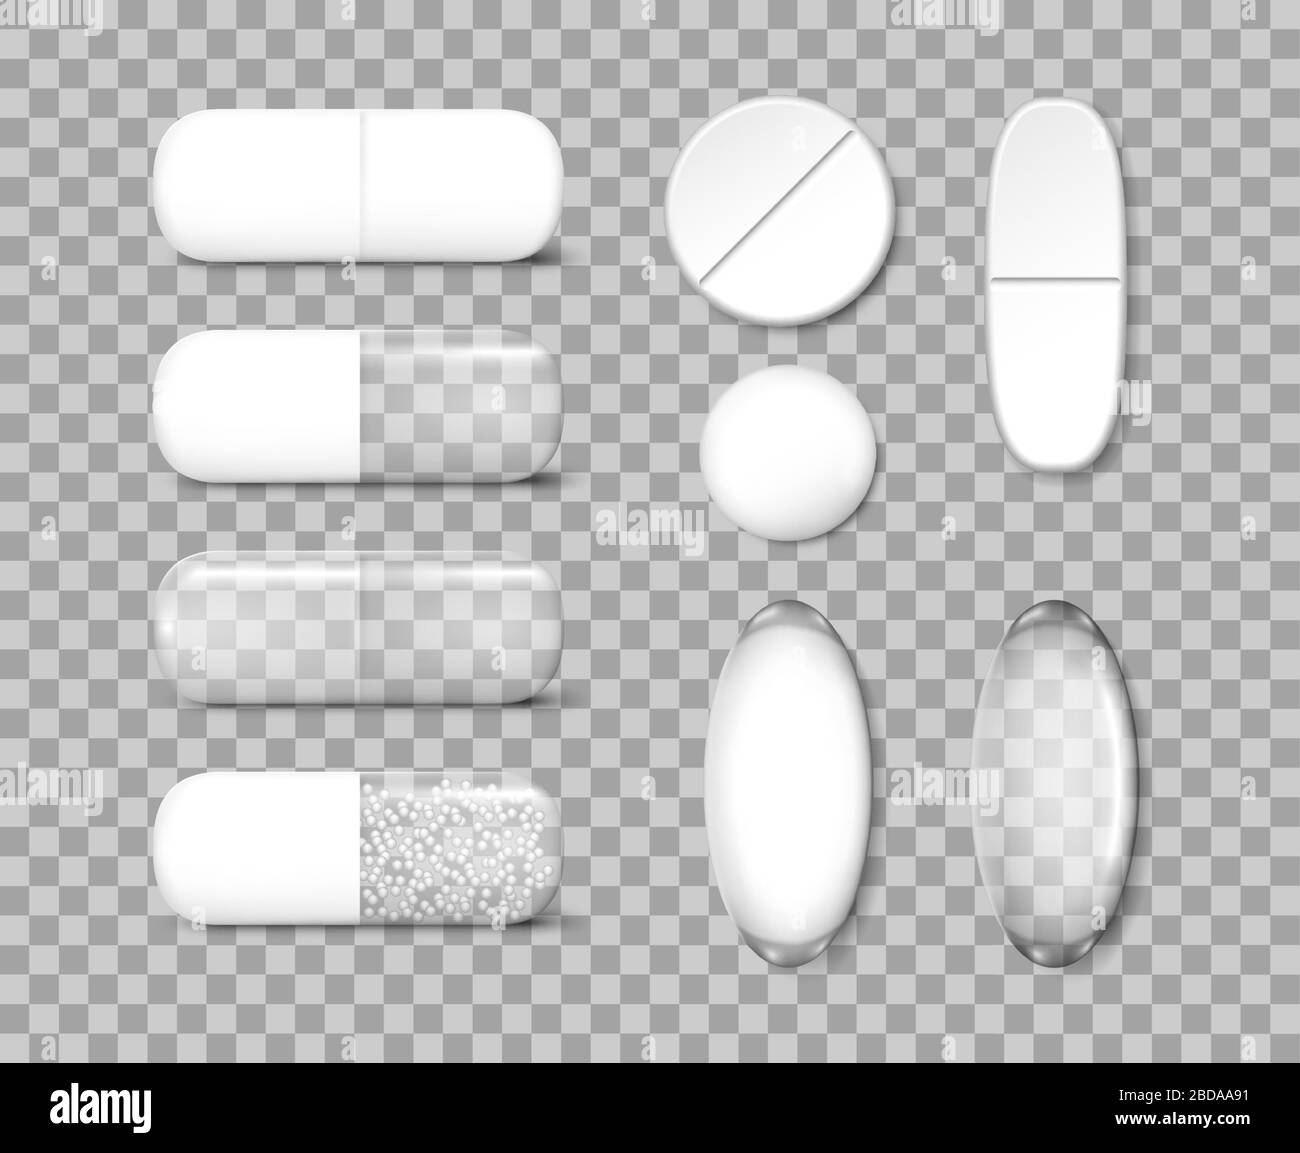 Médicament analgésique pilules modèle. Médicaments antibiotiques et comprimés de vitamine Mockup. Illustration vectorielle Illustration de Vecteur